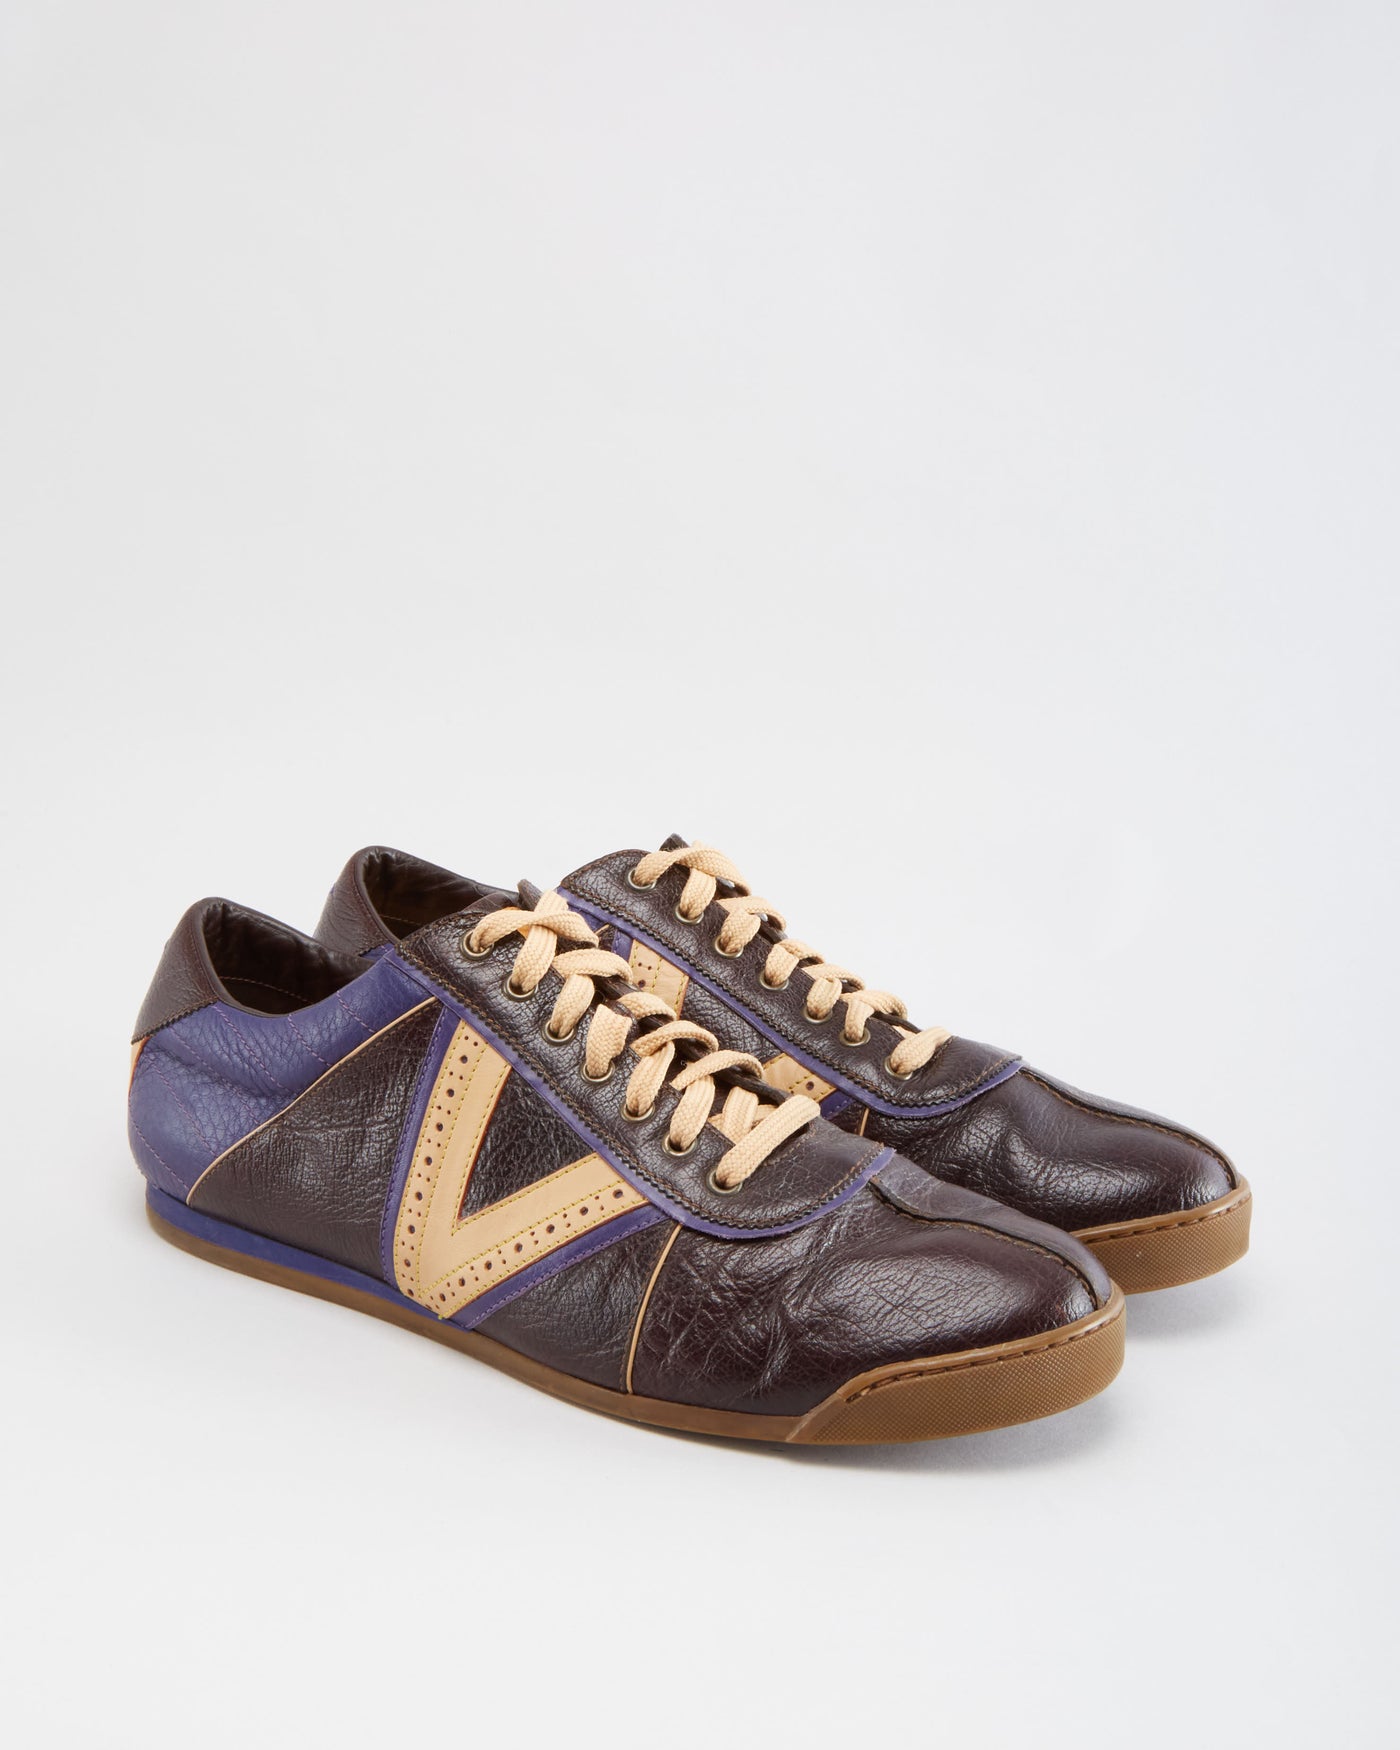 Vintage 90s Louis Vuitton Shoes - 8.5 – Rokit